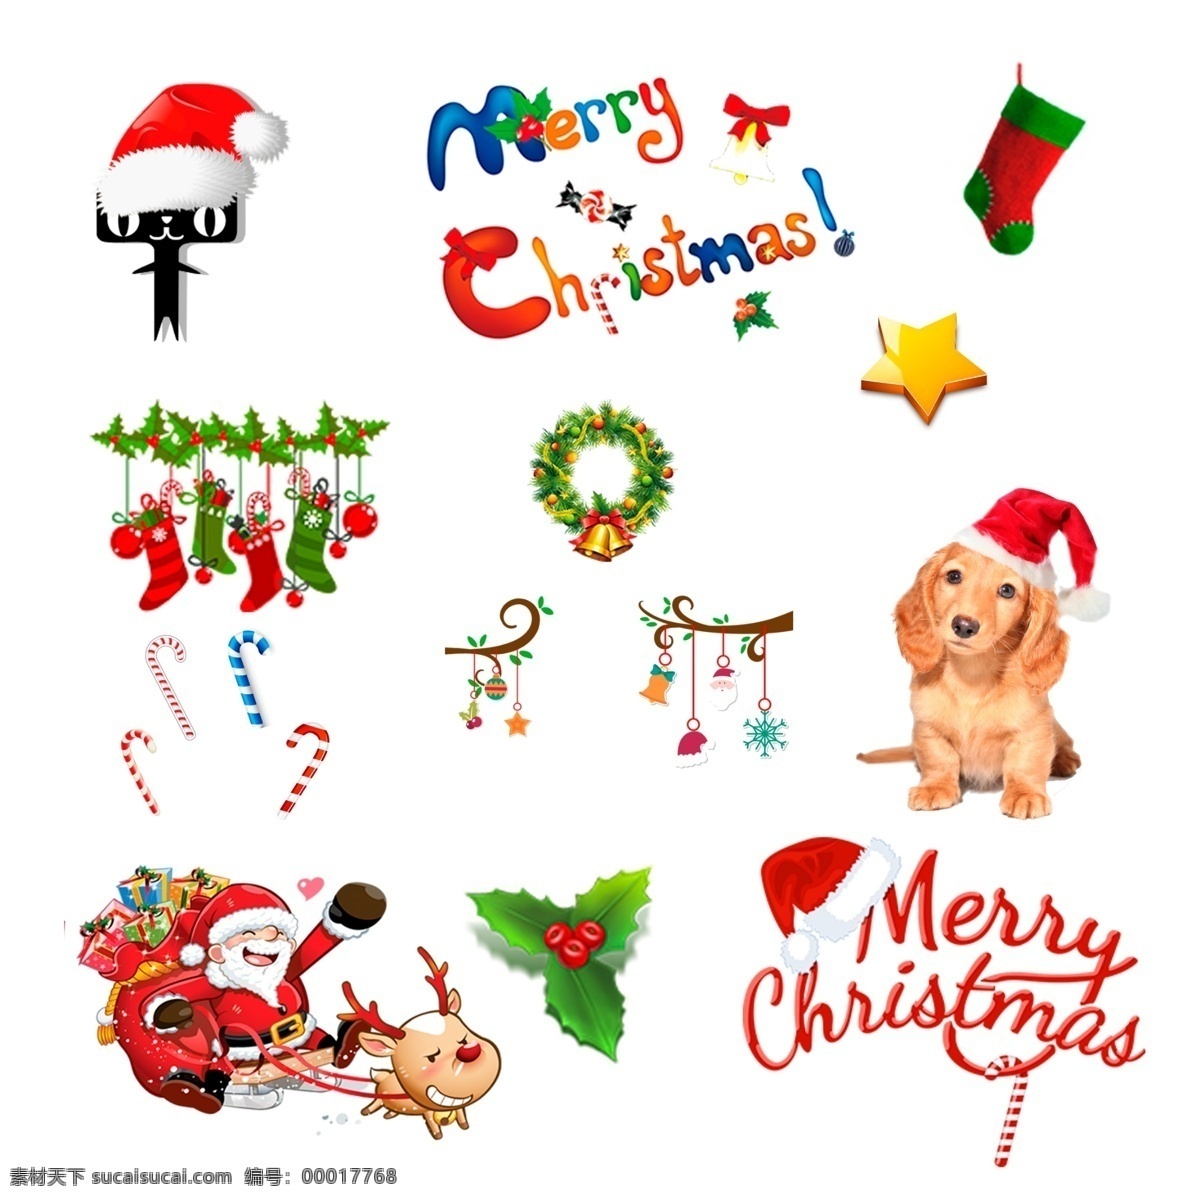 圣诞 圣诞节 圣诞节素材 圣诞天猫狗 圣诞树 圣诞礼物 铃铛 星星 圣诞雪橇 圣诞促销 圣诞海报素材 圣诞袜 圣诞帽 圣诞艺术字